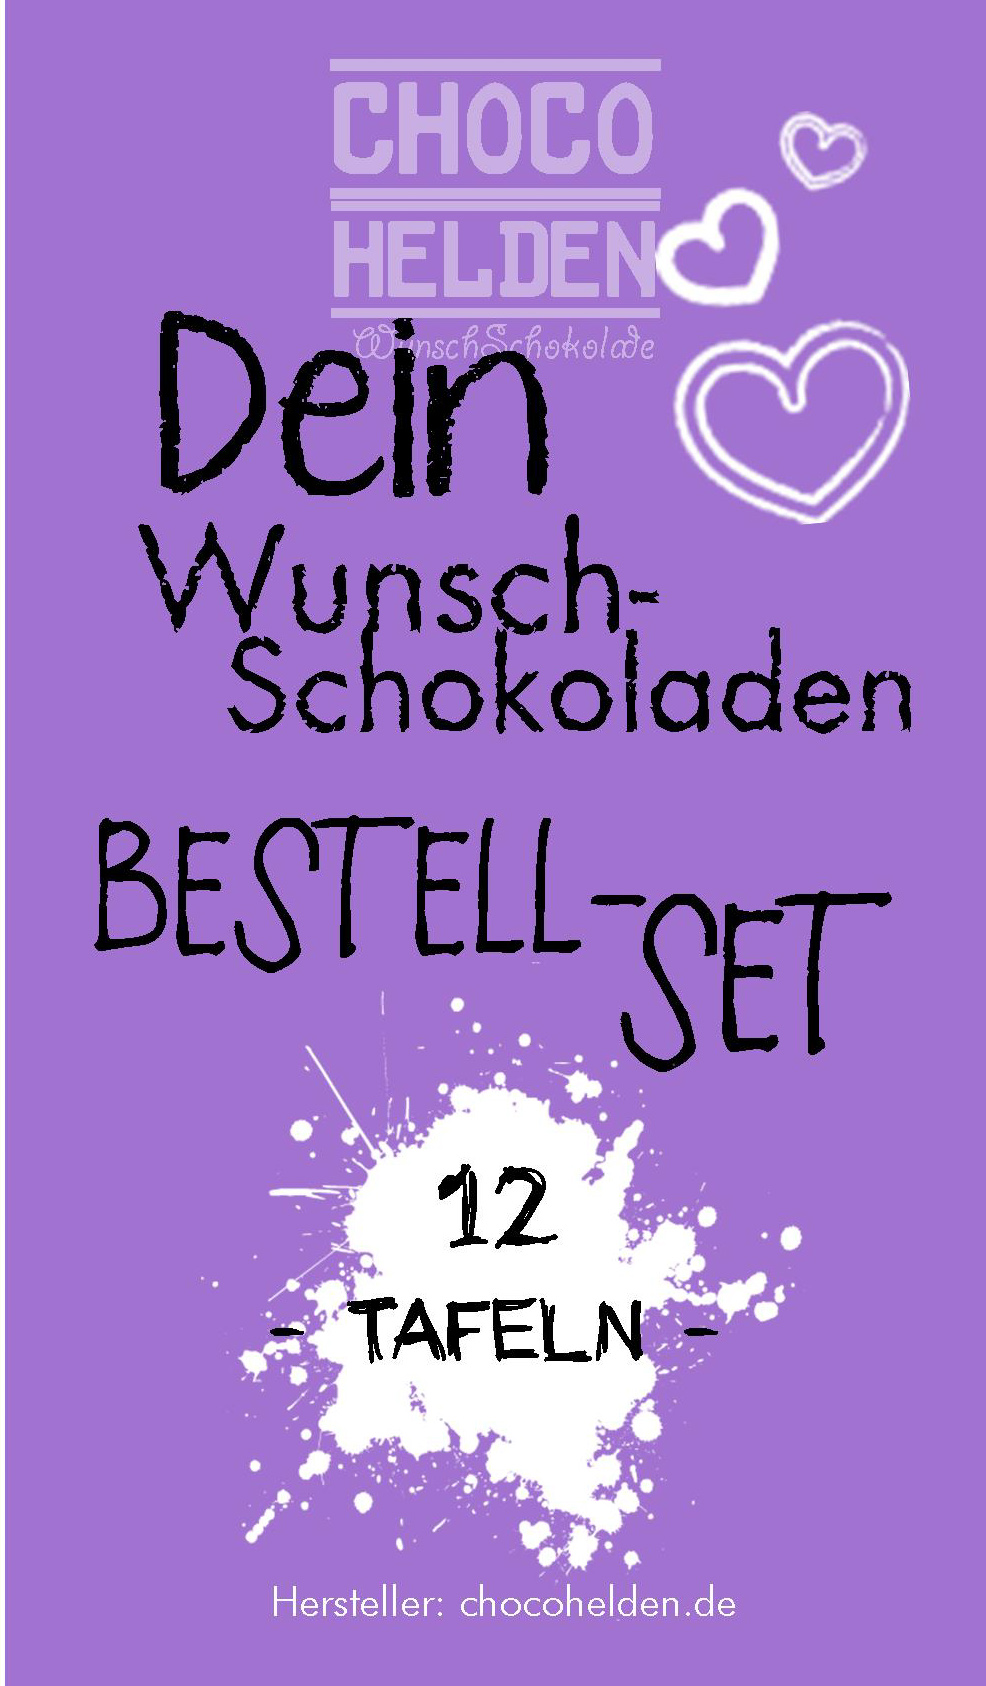 WunschSchokoladen Bestell-Set 12 Tafeln